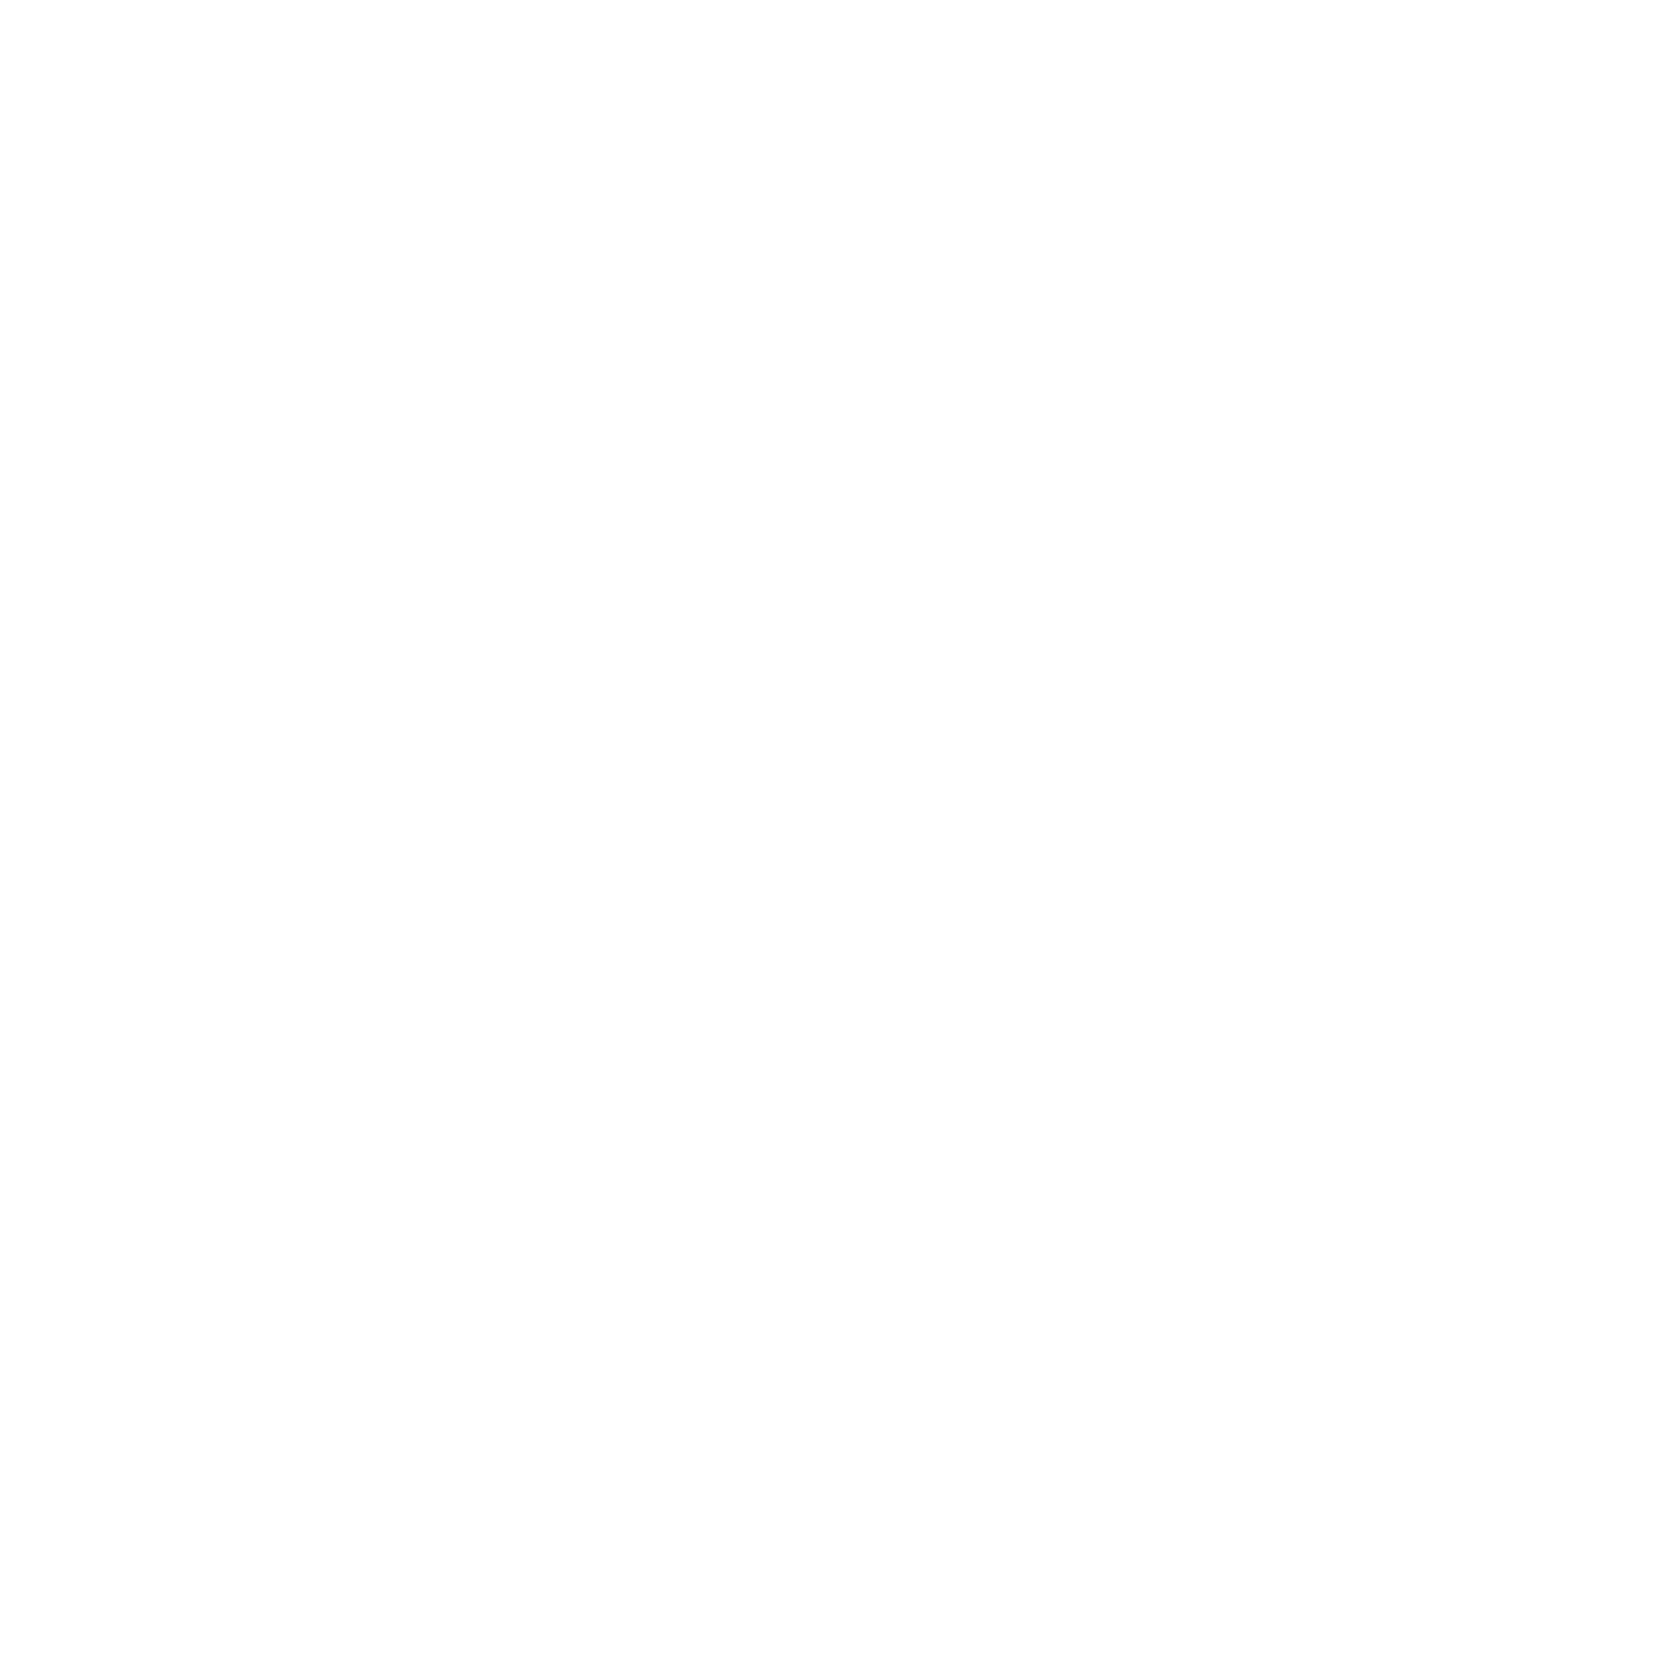 Saper